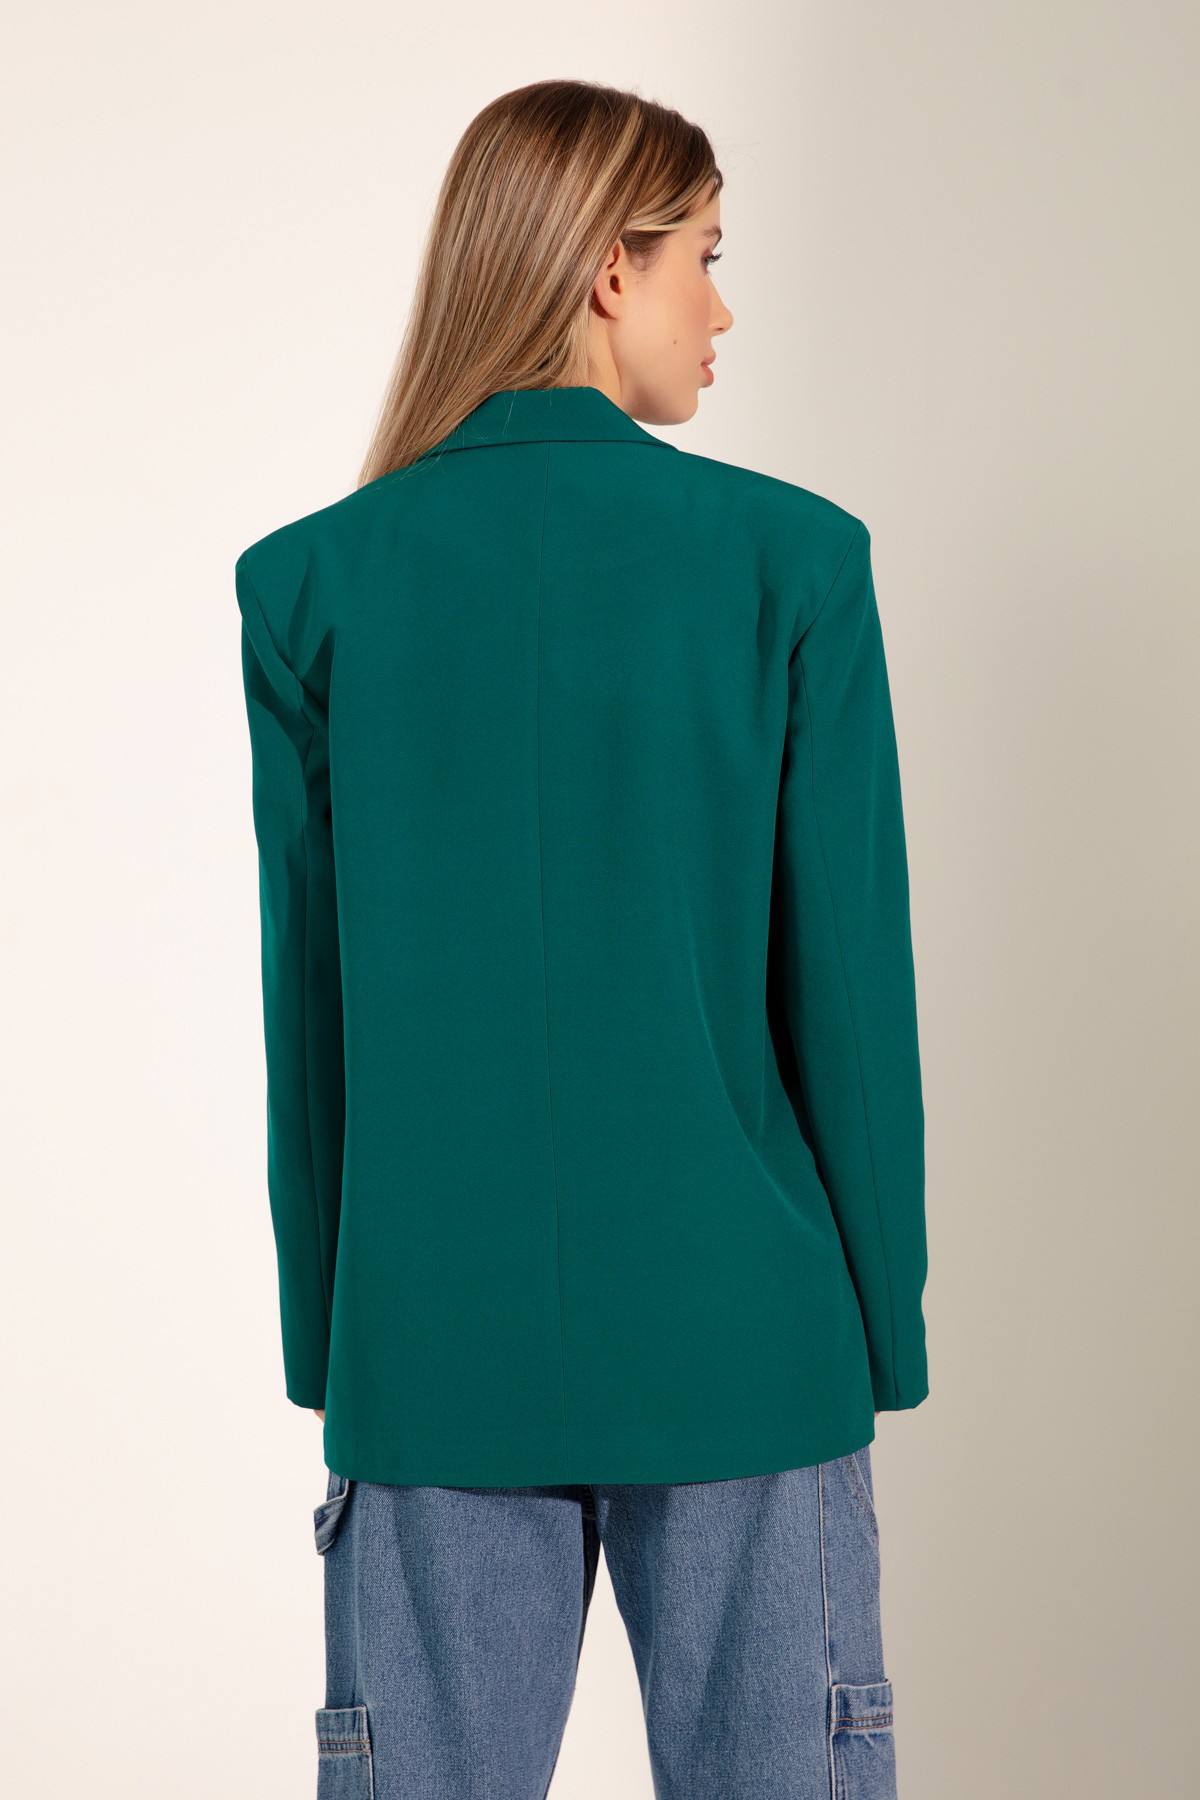 Kadın Oversize Düğmeli Blazer Ceket - Yeşil